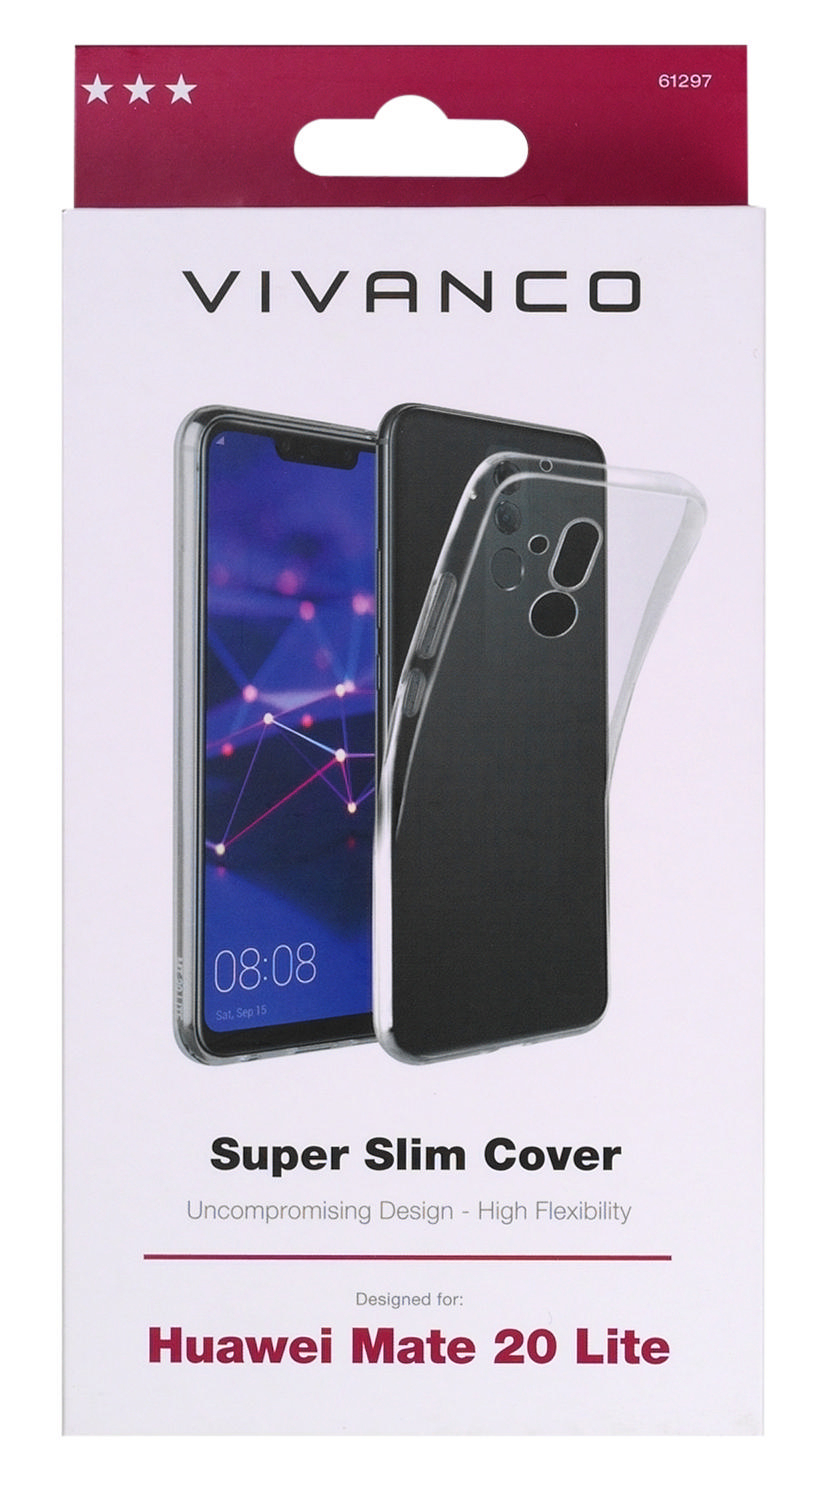 VIVANCO 61297 Super Slim, 20 Lite, Backcover, Mate Huawei, Transparent